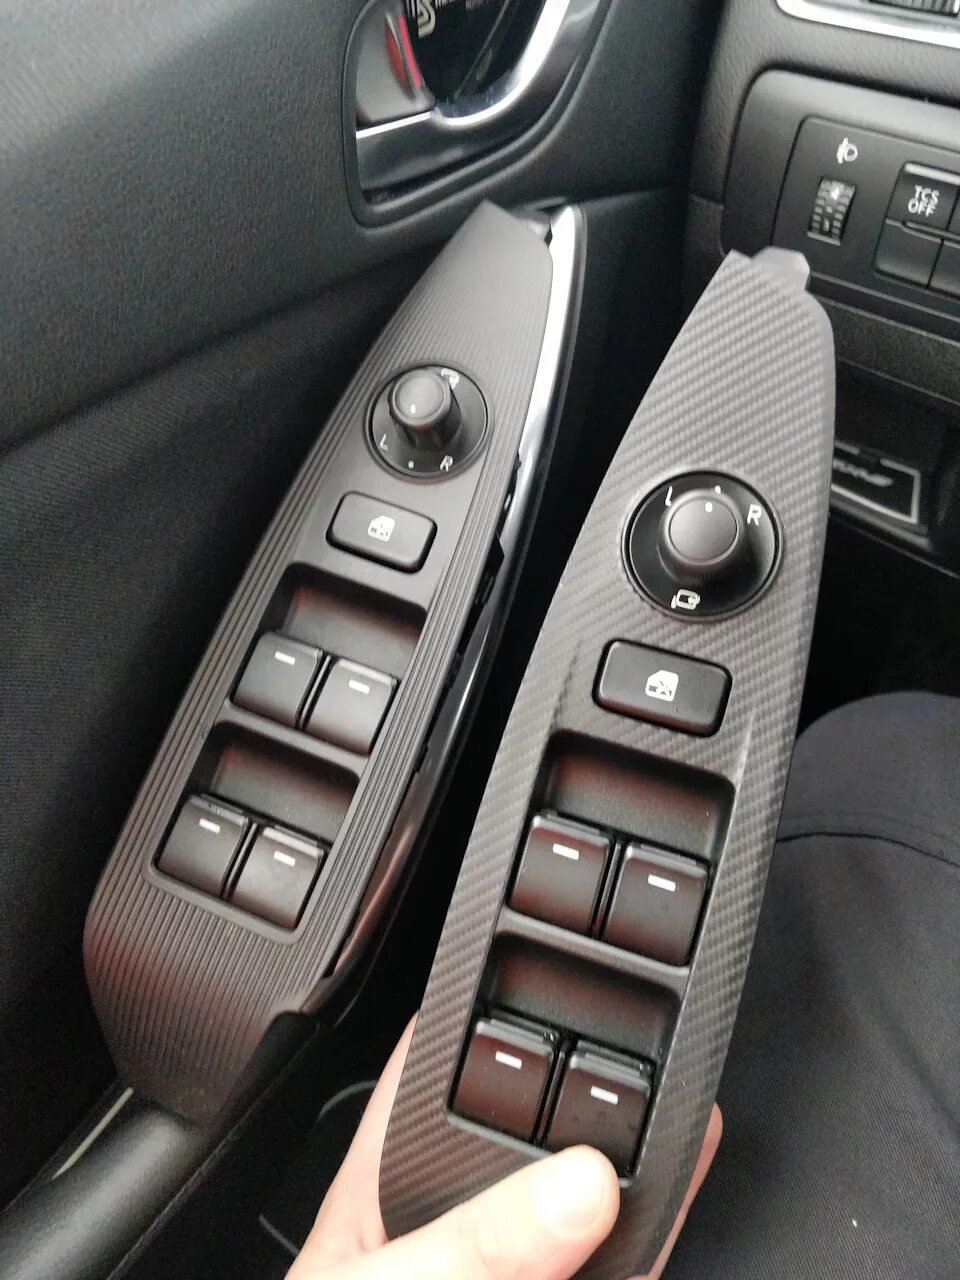 Складывание зеркал мазда 6. Mazda cx5 2013 блок управления стеклоподъемниками. Блок управления стеклоподъемниками Mazda 6 2013. Кнопки стеклоподъёмников Mazda CX-5 2021. Блок управления стеклоподъемниками Мазда СХ 5 2017.